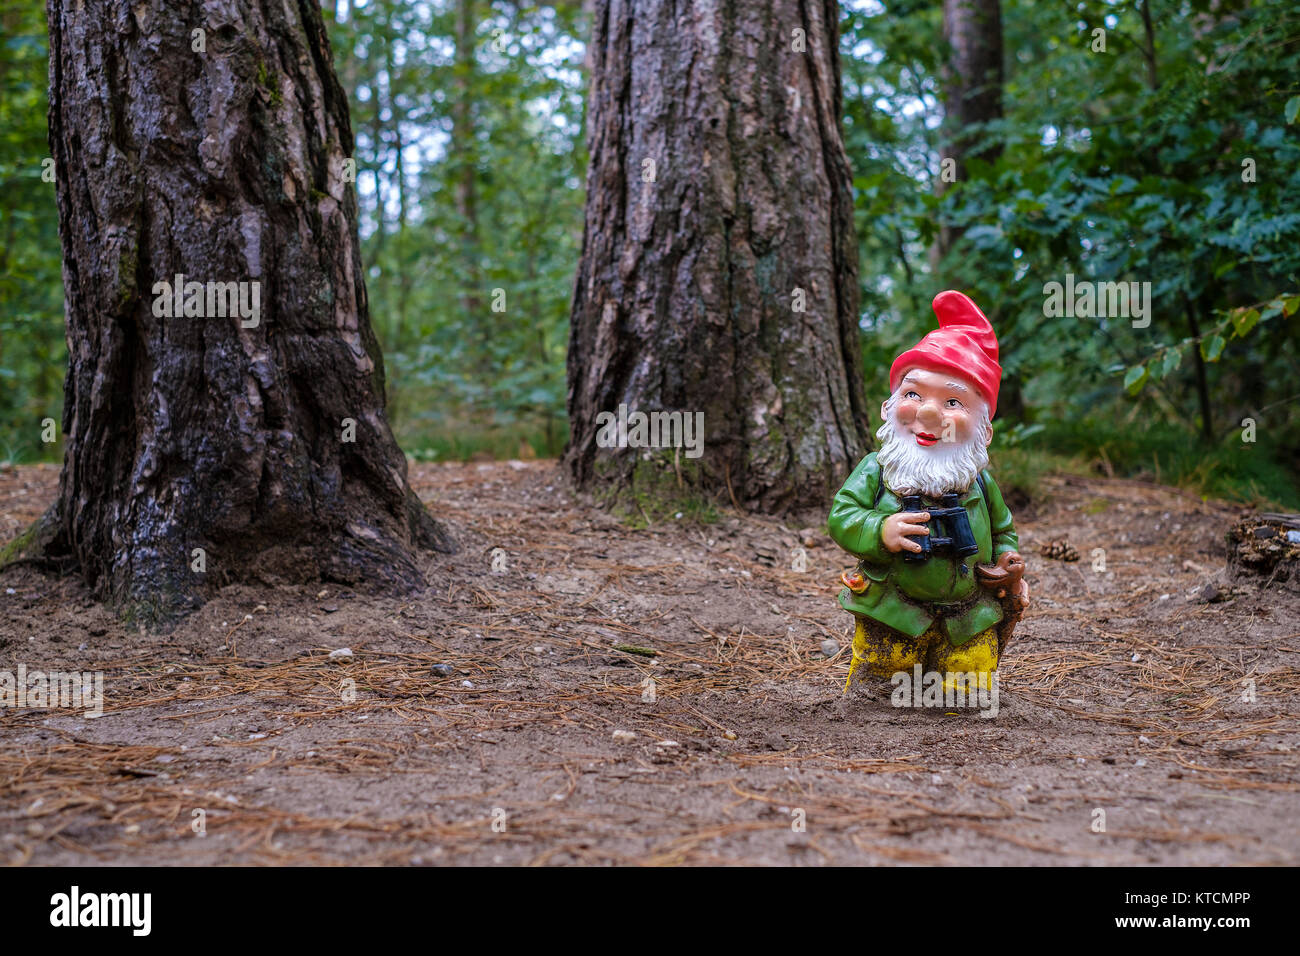 Petit jardin gnome avec barbe et chapeau pointu rouge et des jumelles est seul dans la forêt Banque D'Images